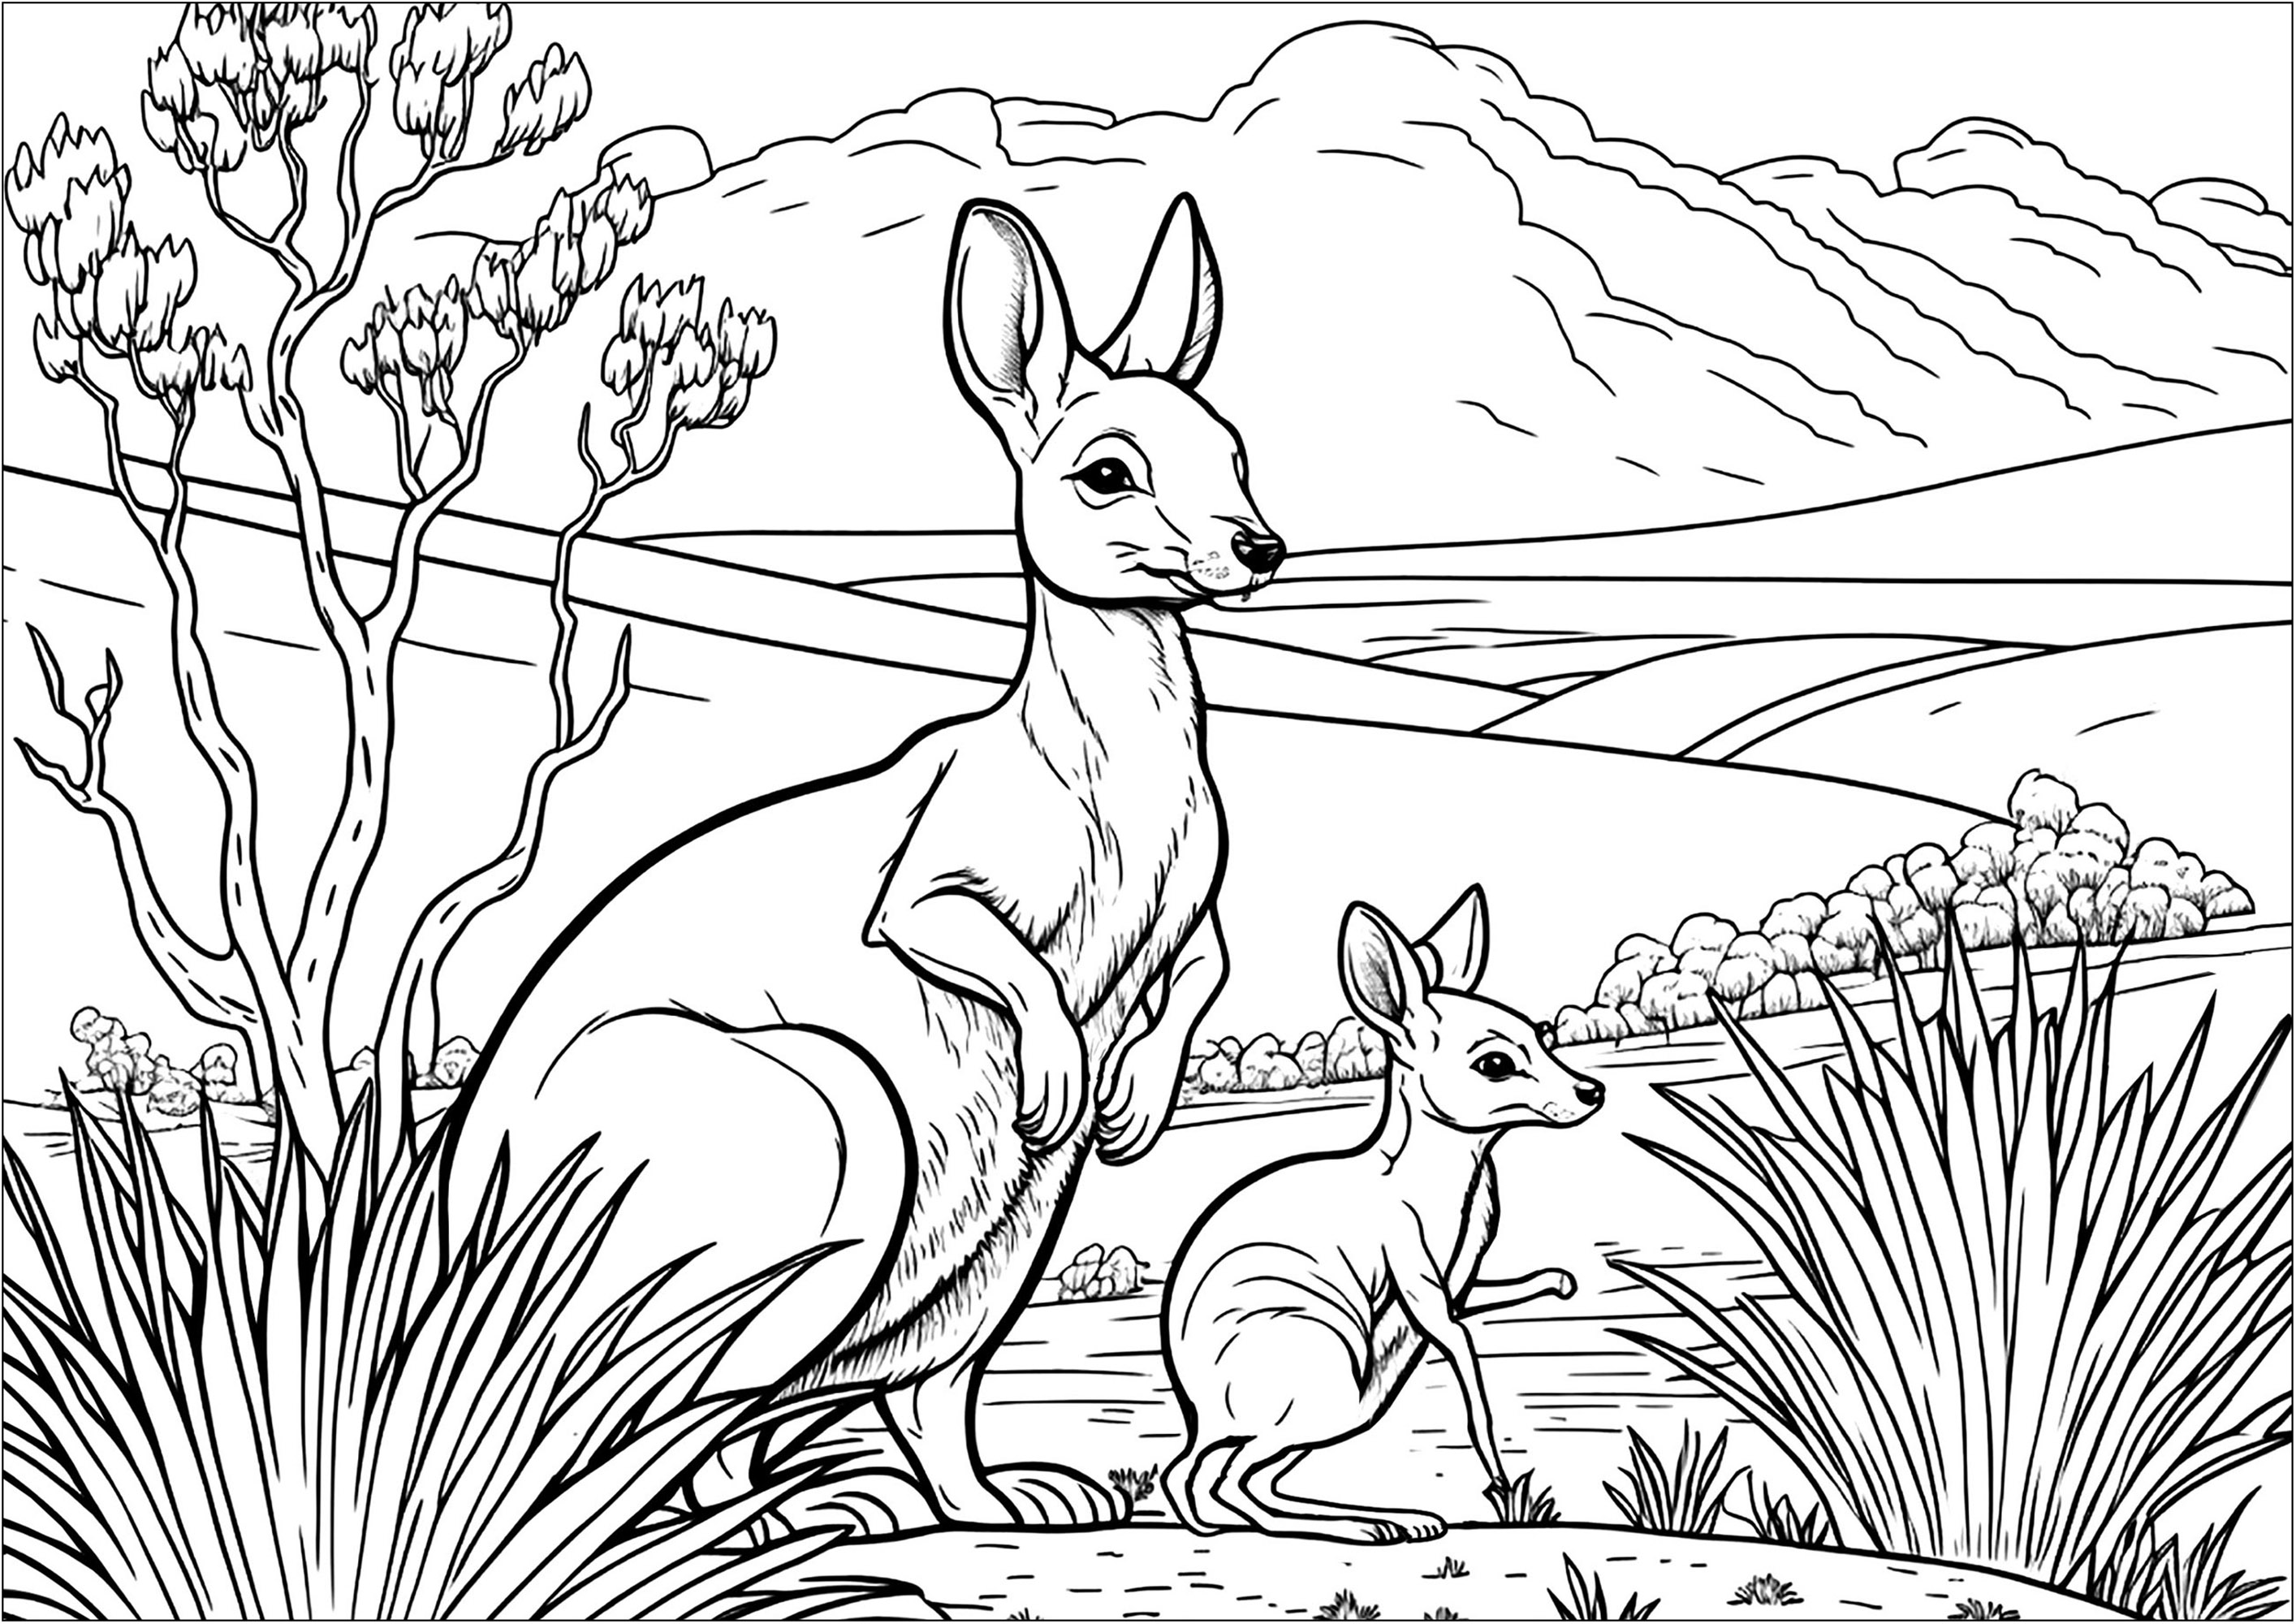 Un Coloriage assez complexe avec une maman kangourou et son petit. Coloriez également le beau paysage et la belle végétation faisant partie intégrante de ce magnifique dessin à colorier.